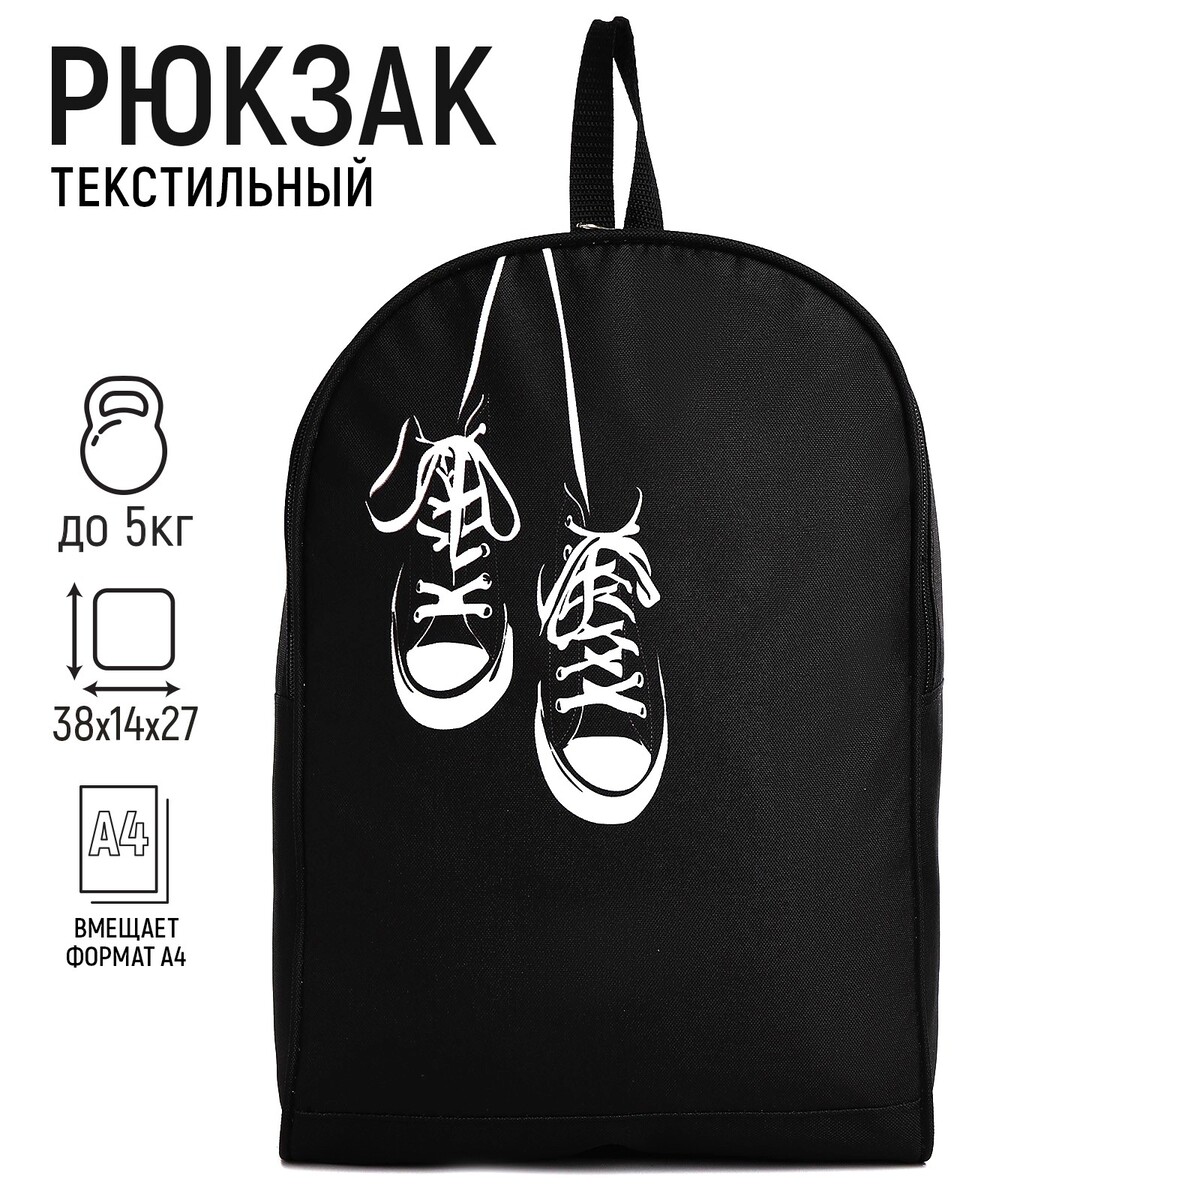 Рюкзак текстильный кеды, 38х14х27 см, цвет черный